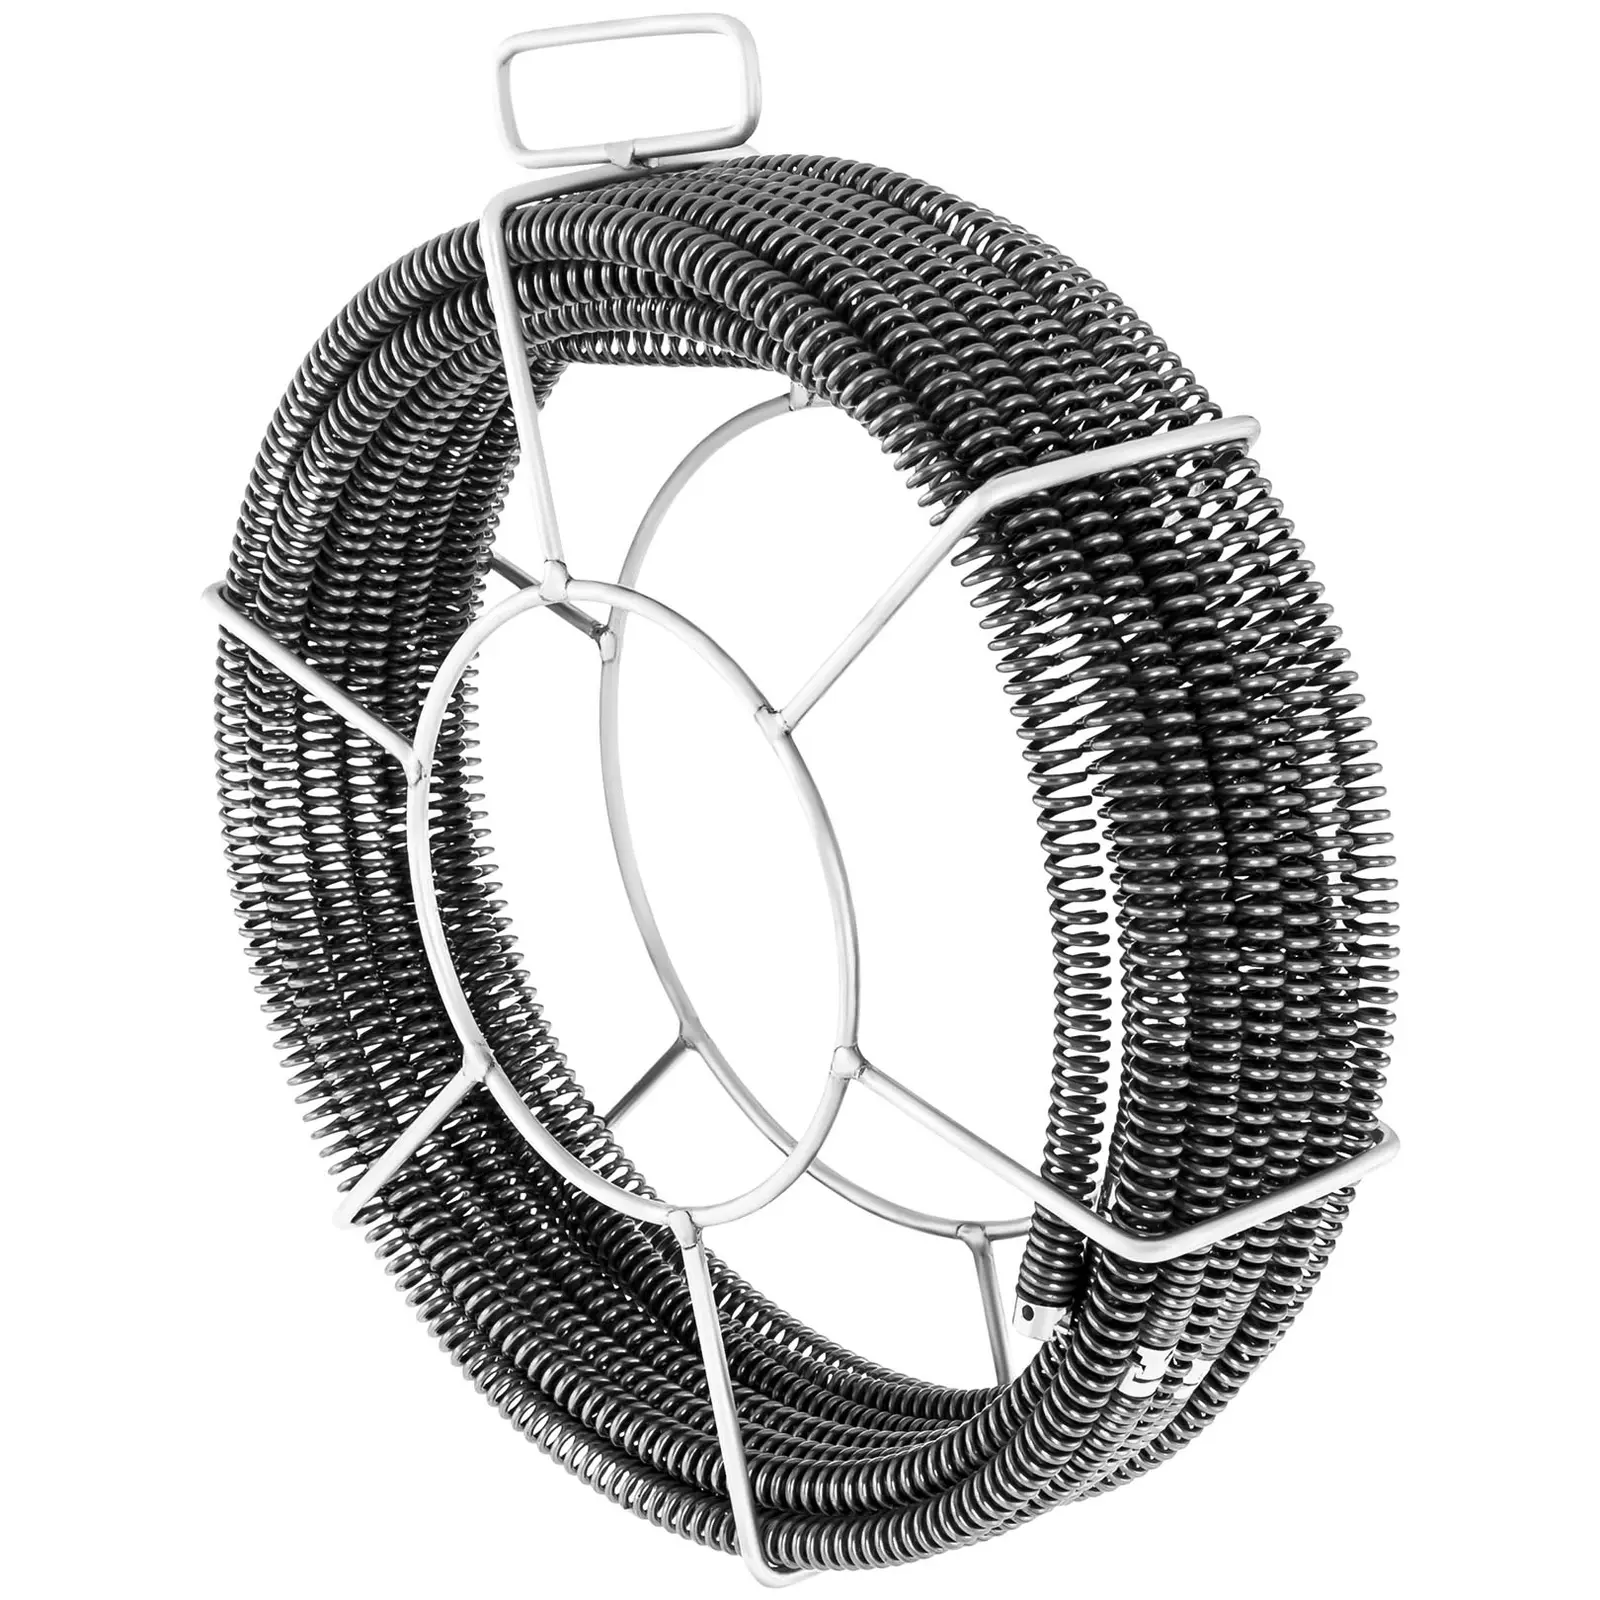 Spirala do rur - zestaw - 5 x 2,3 m / Ø 16 mm + 1 x 2,4 m / Ø 15 mm